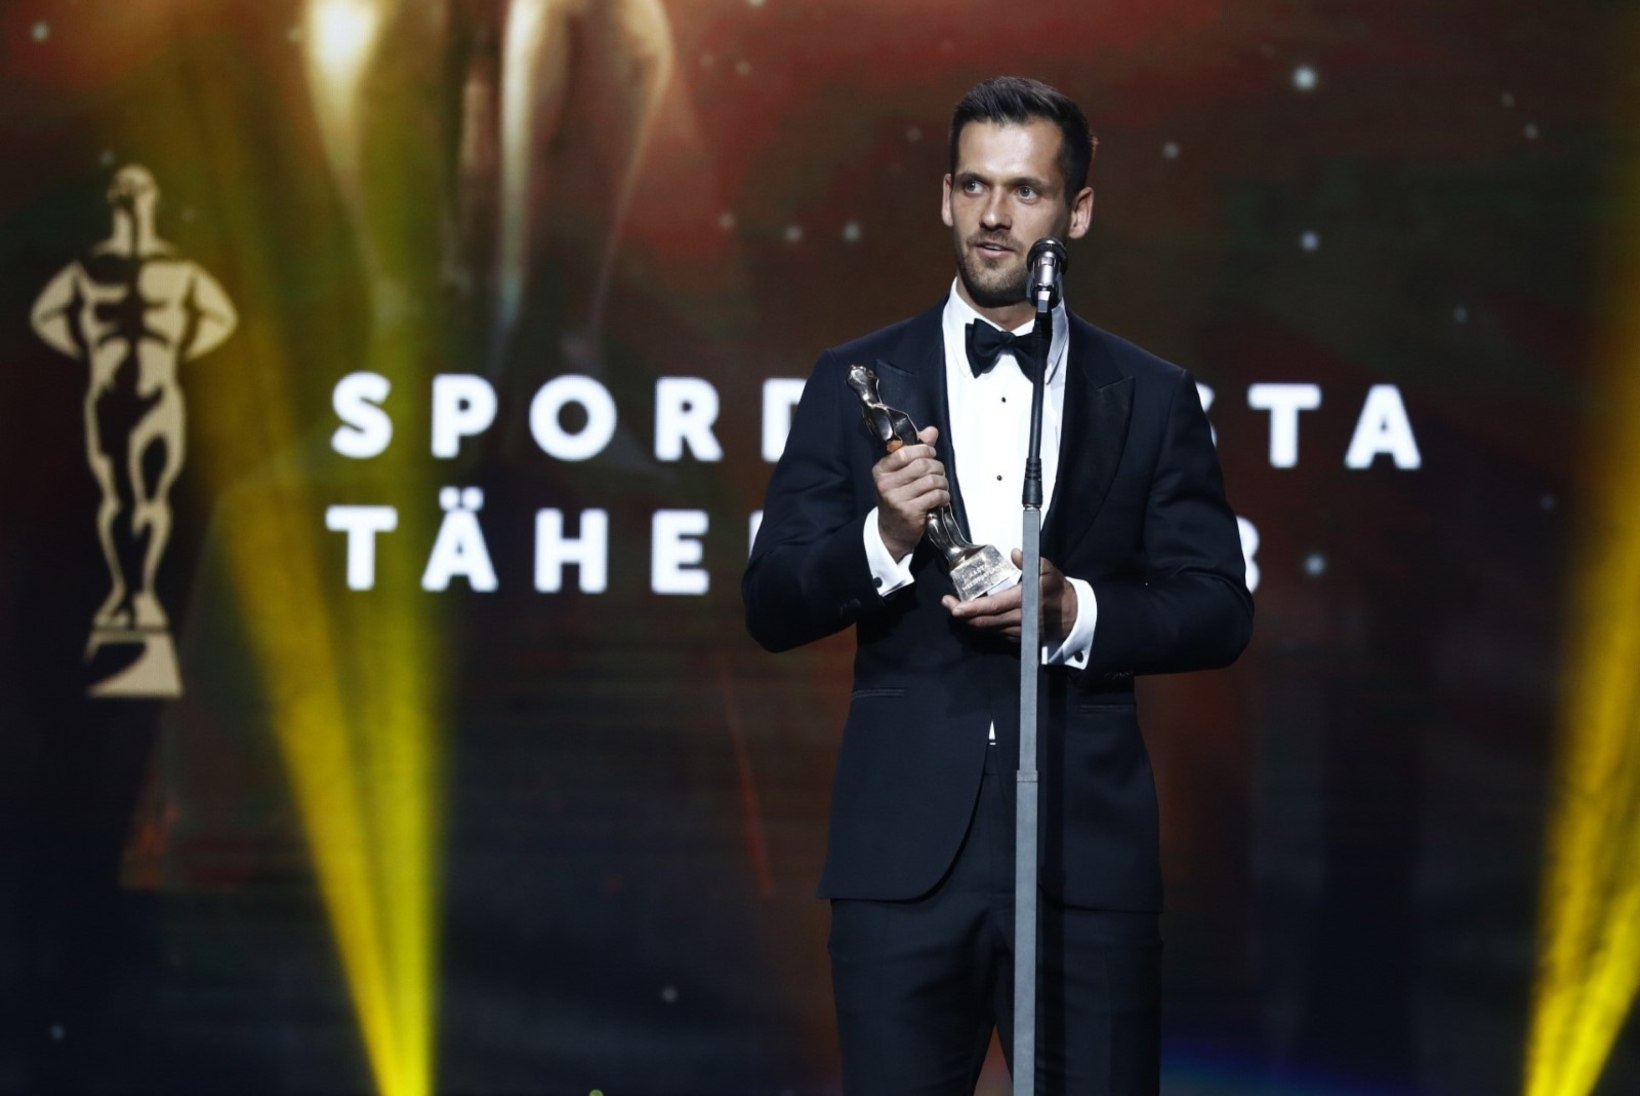 ÕL VIDEO | Aasta meessportlane Magnus Kirt: teised nominendid olid väga kõvad ja võit oli minu jaoks väga suur üllatus